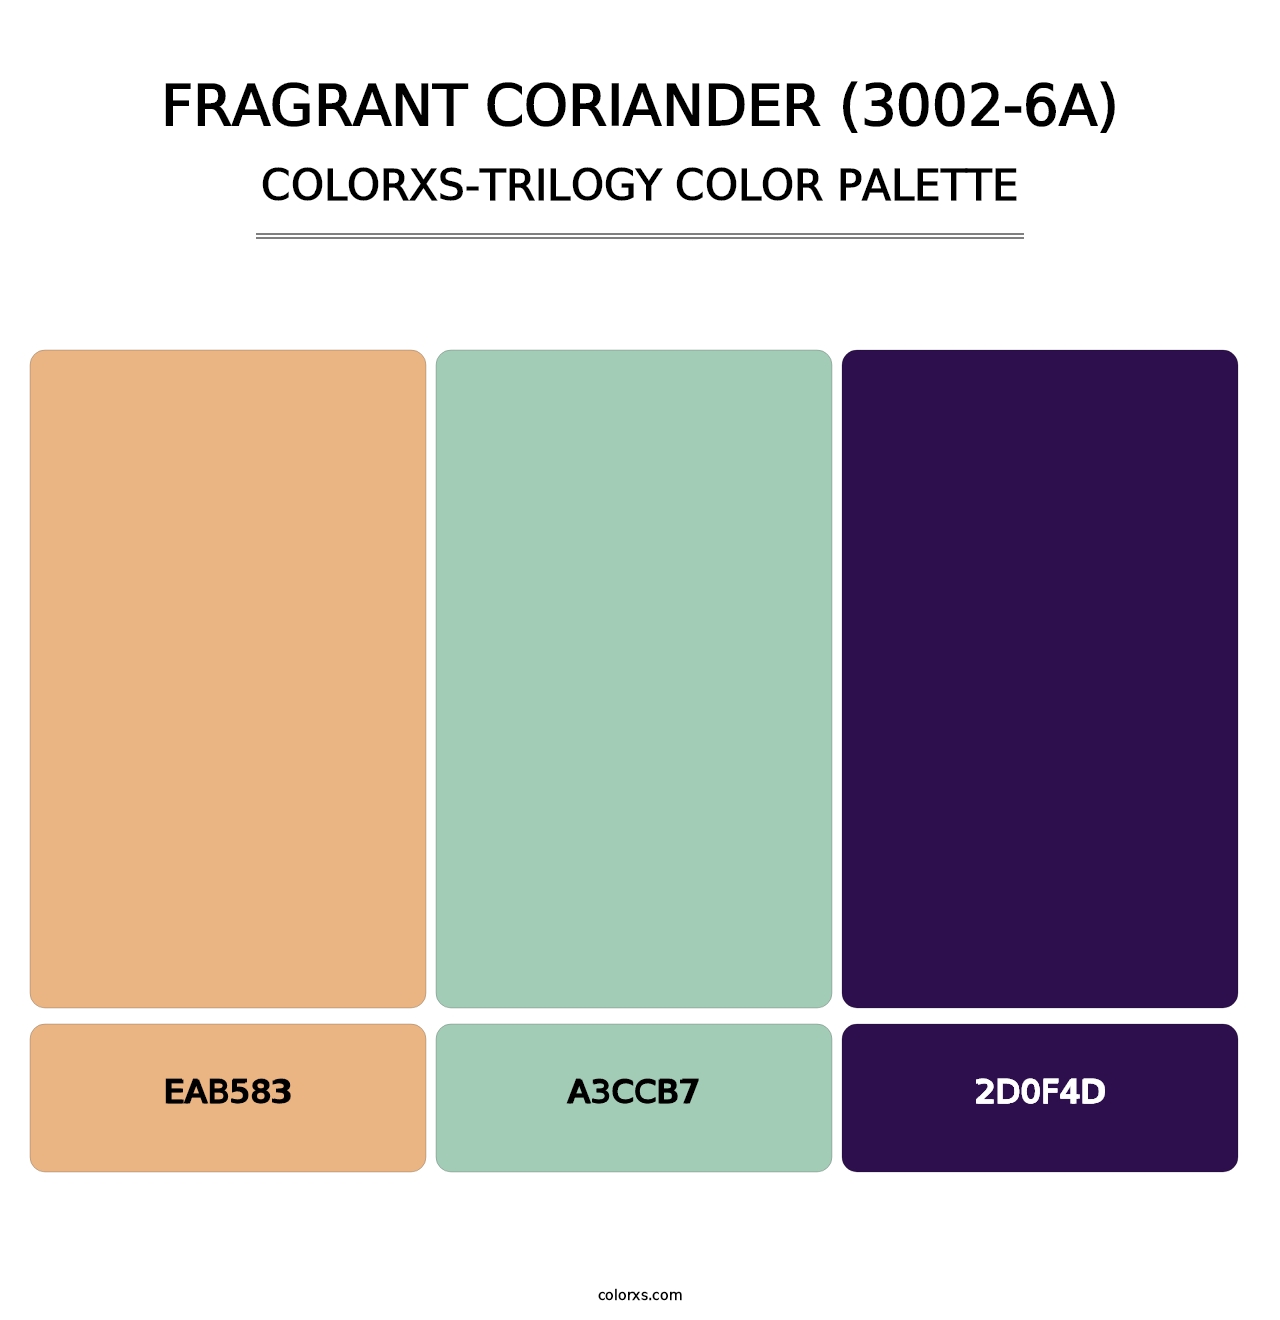 Fragrant Coriander (3002-6A) - Colorxs Trilogy Palette